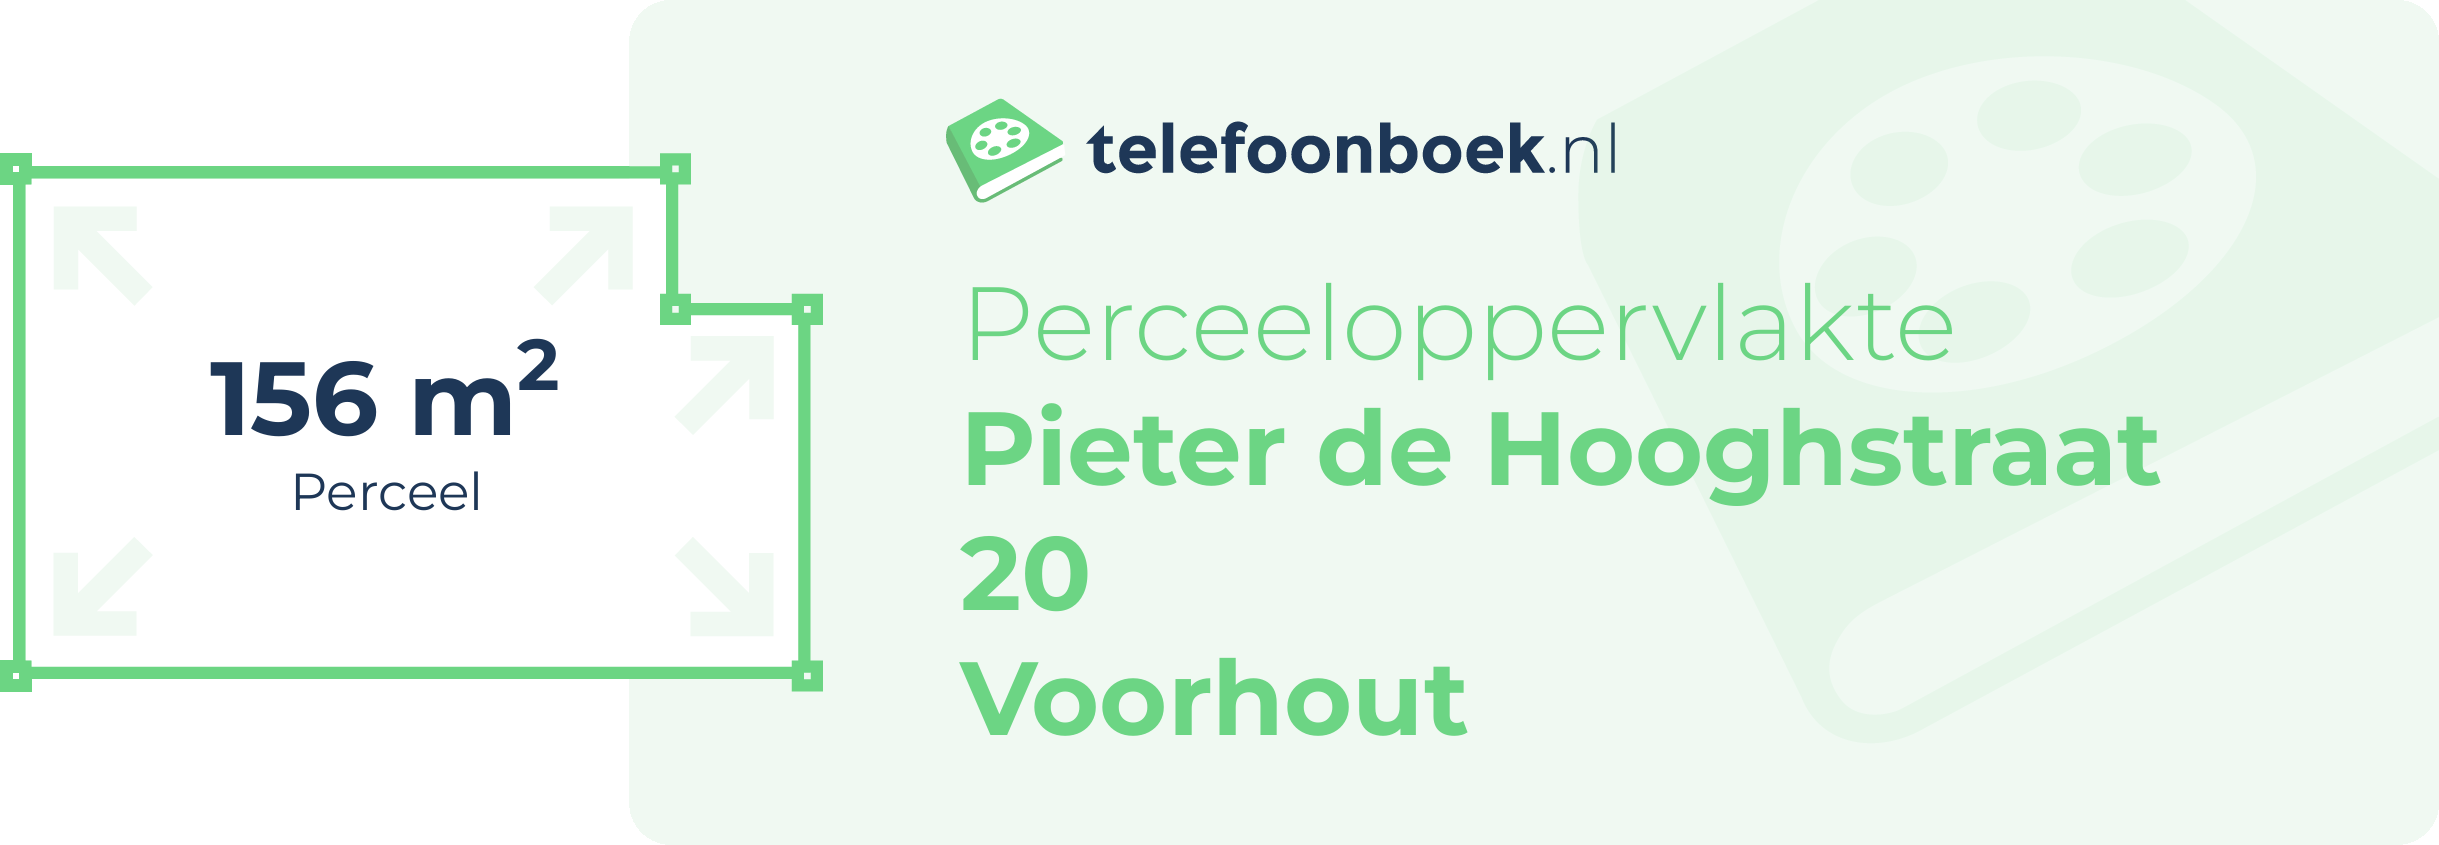 Perceeloppervlakte Pieter De Hooghstraat 20 Voorhout